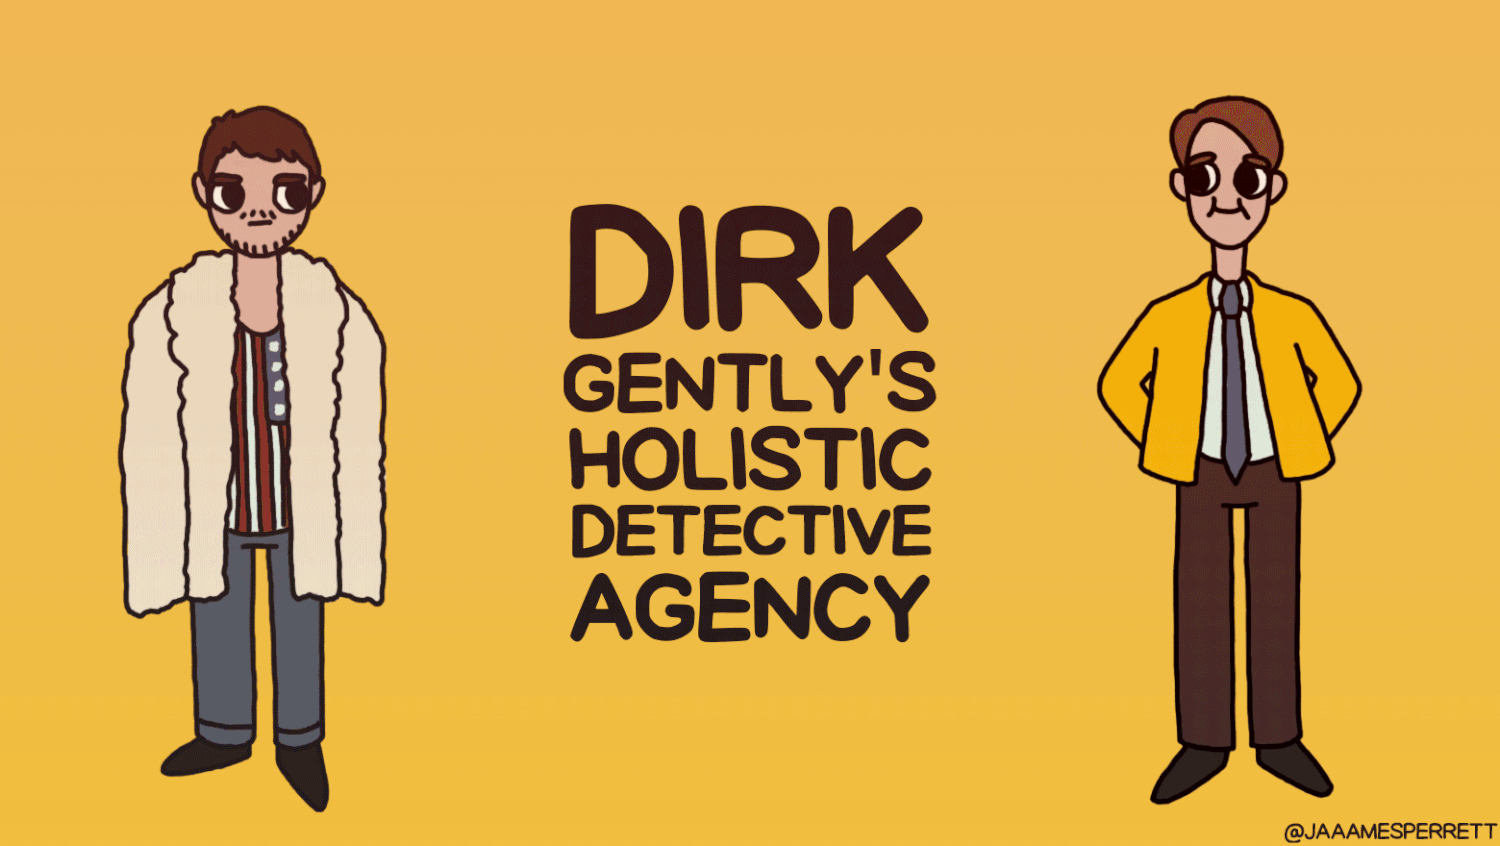 Gif sobre una de las nuevas series de Netflix, Dirk Gently's Detective Holistic Agency, estrenada a finales de 2016. Crédito @jaaamesperrett